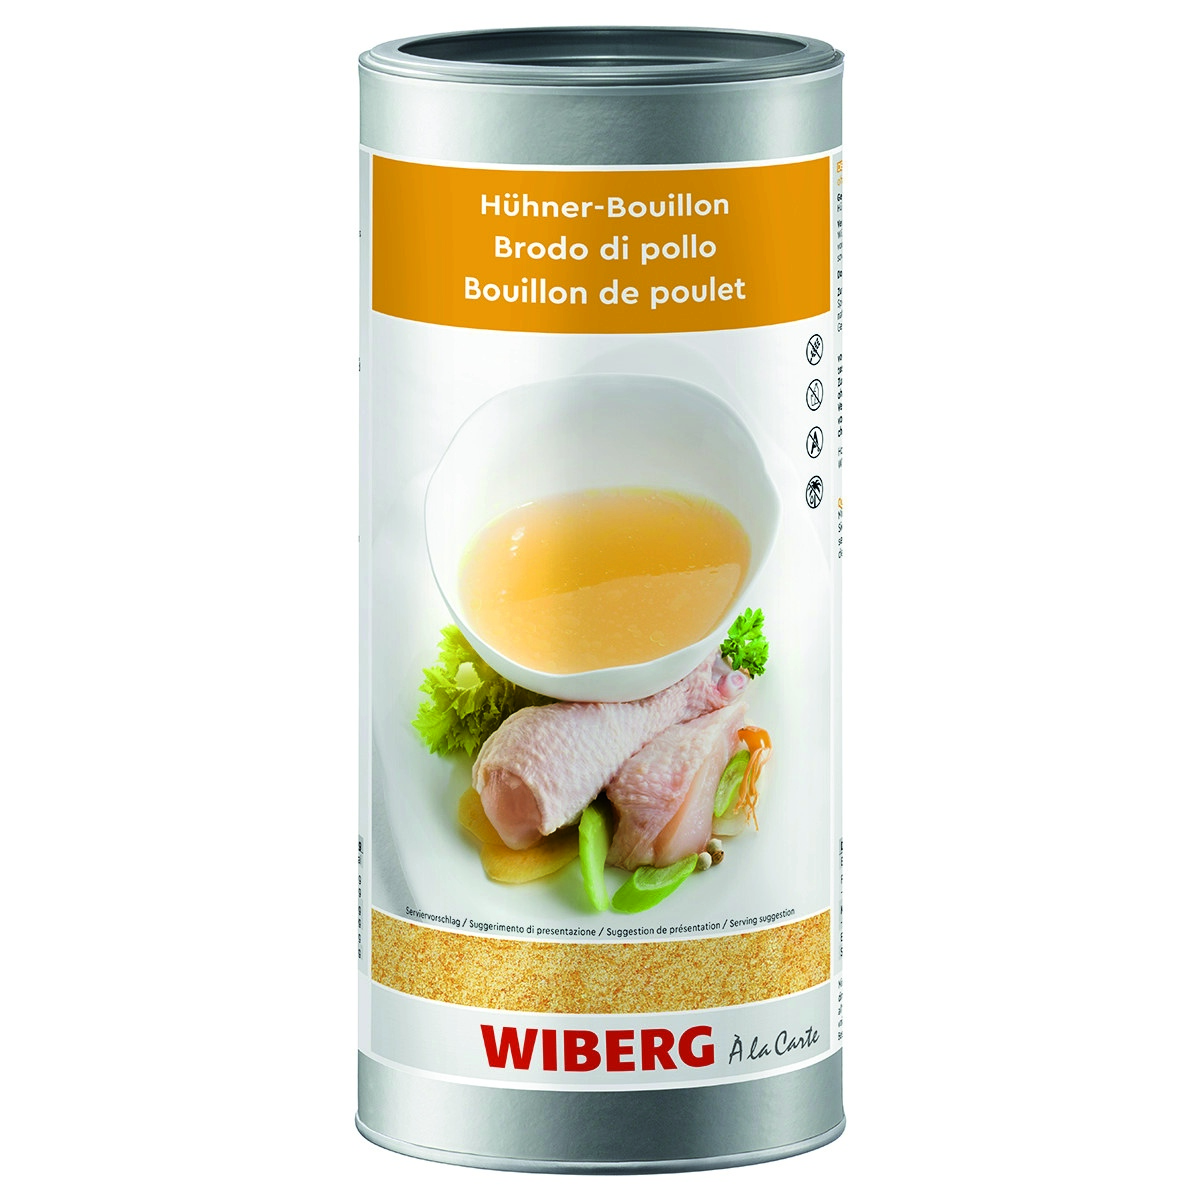 WIBERG Hühner-Bouillon